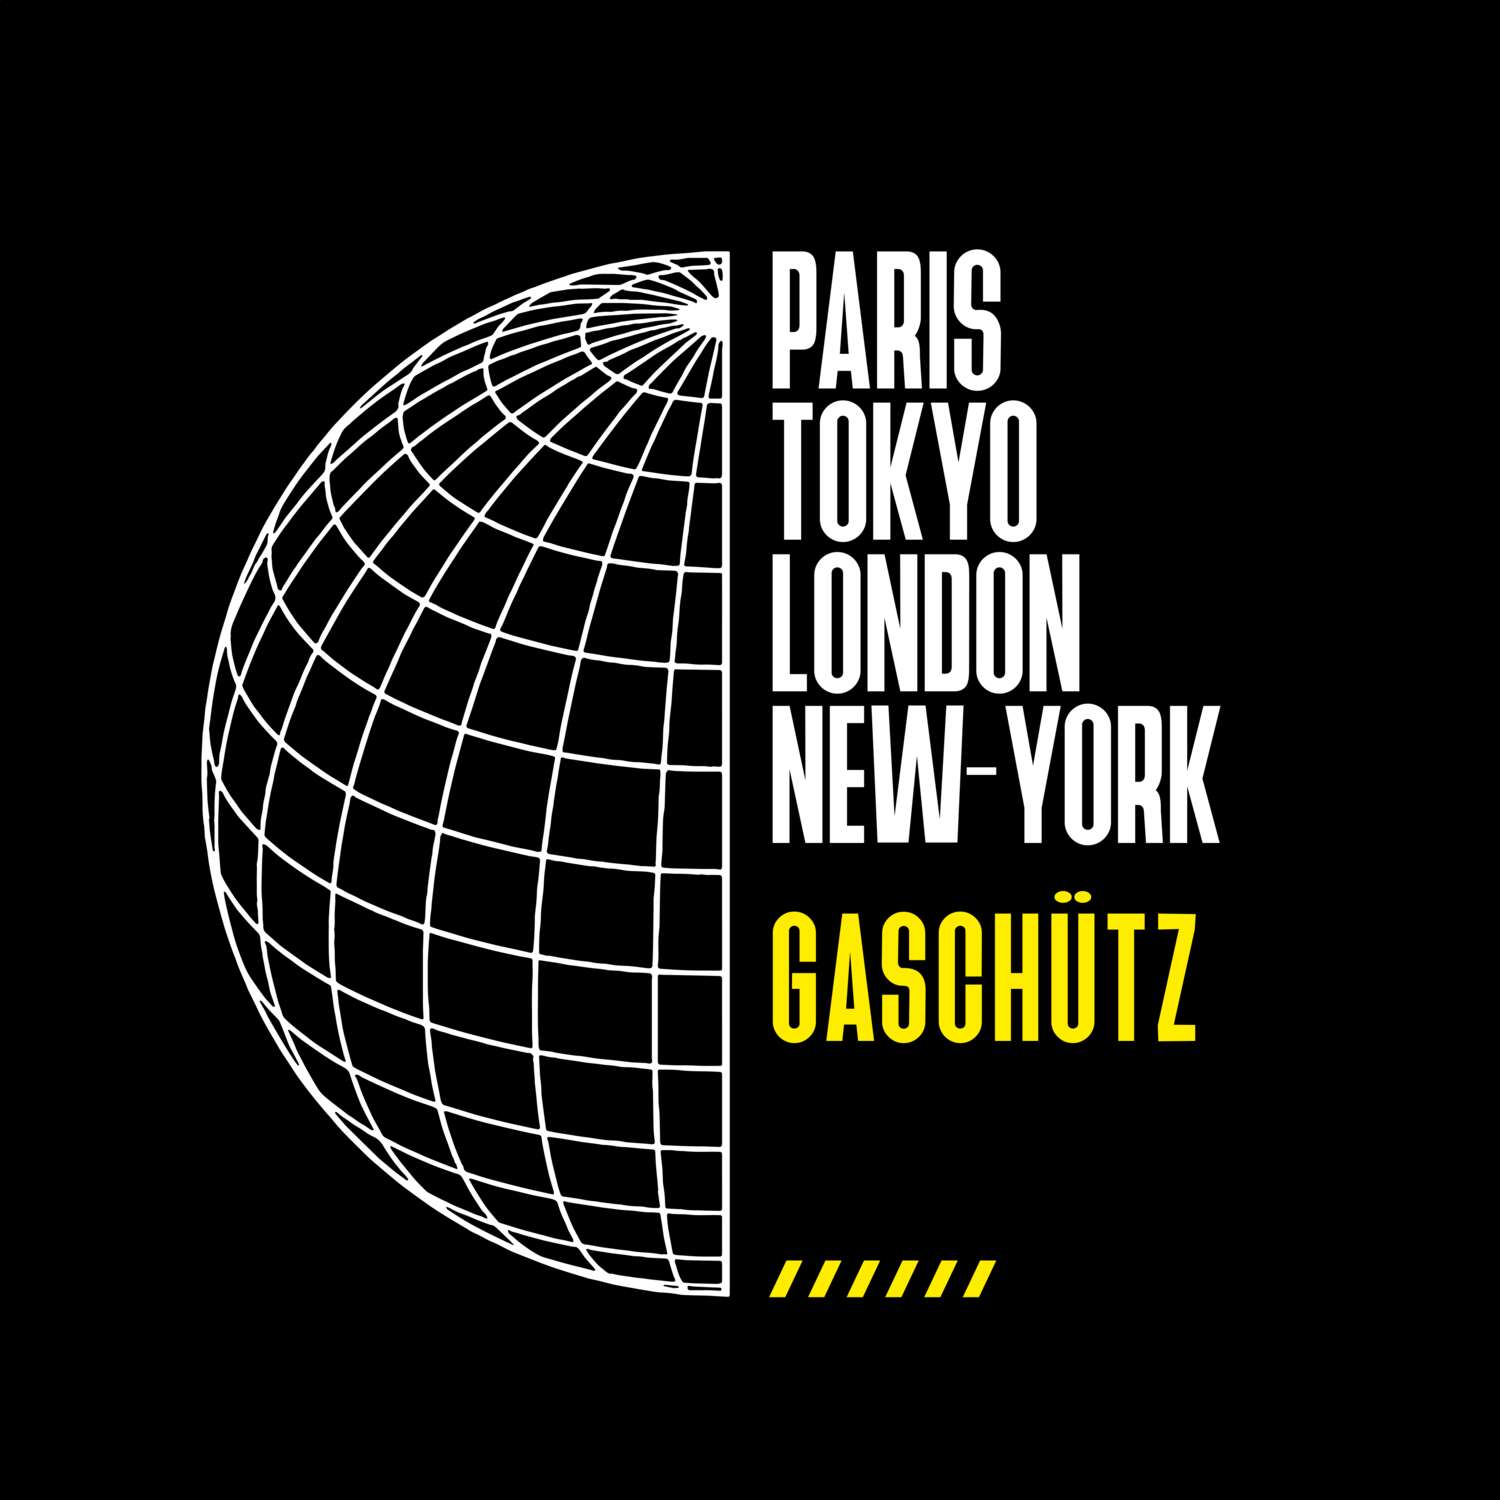 Gaschütz T-Shirt »Paris Tokyo London«